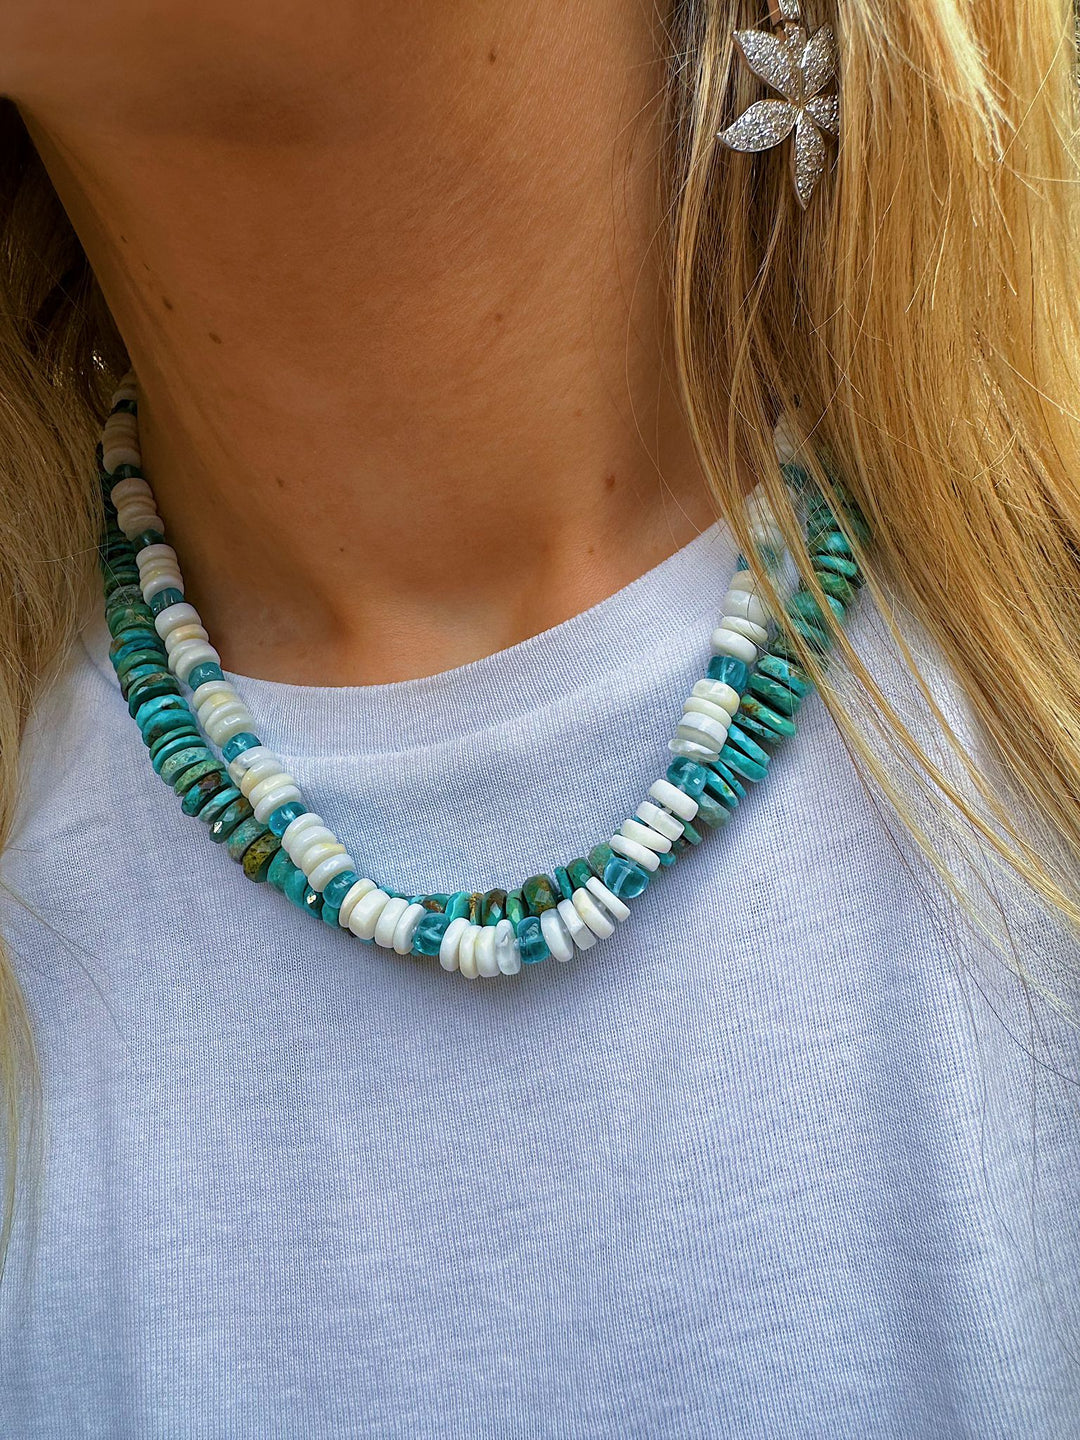 Turquoise Beaded Necklace (45cm) - Ileana Makri